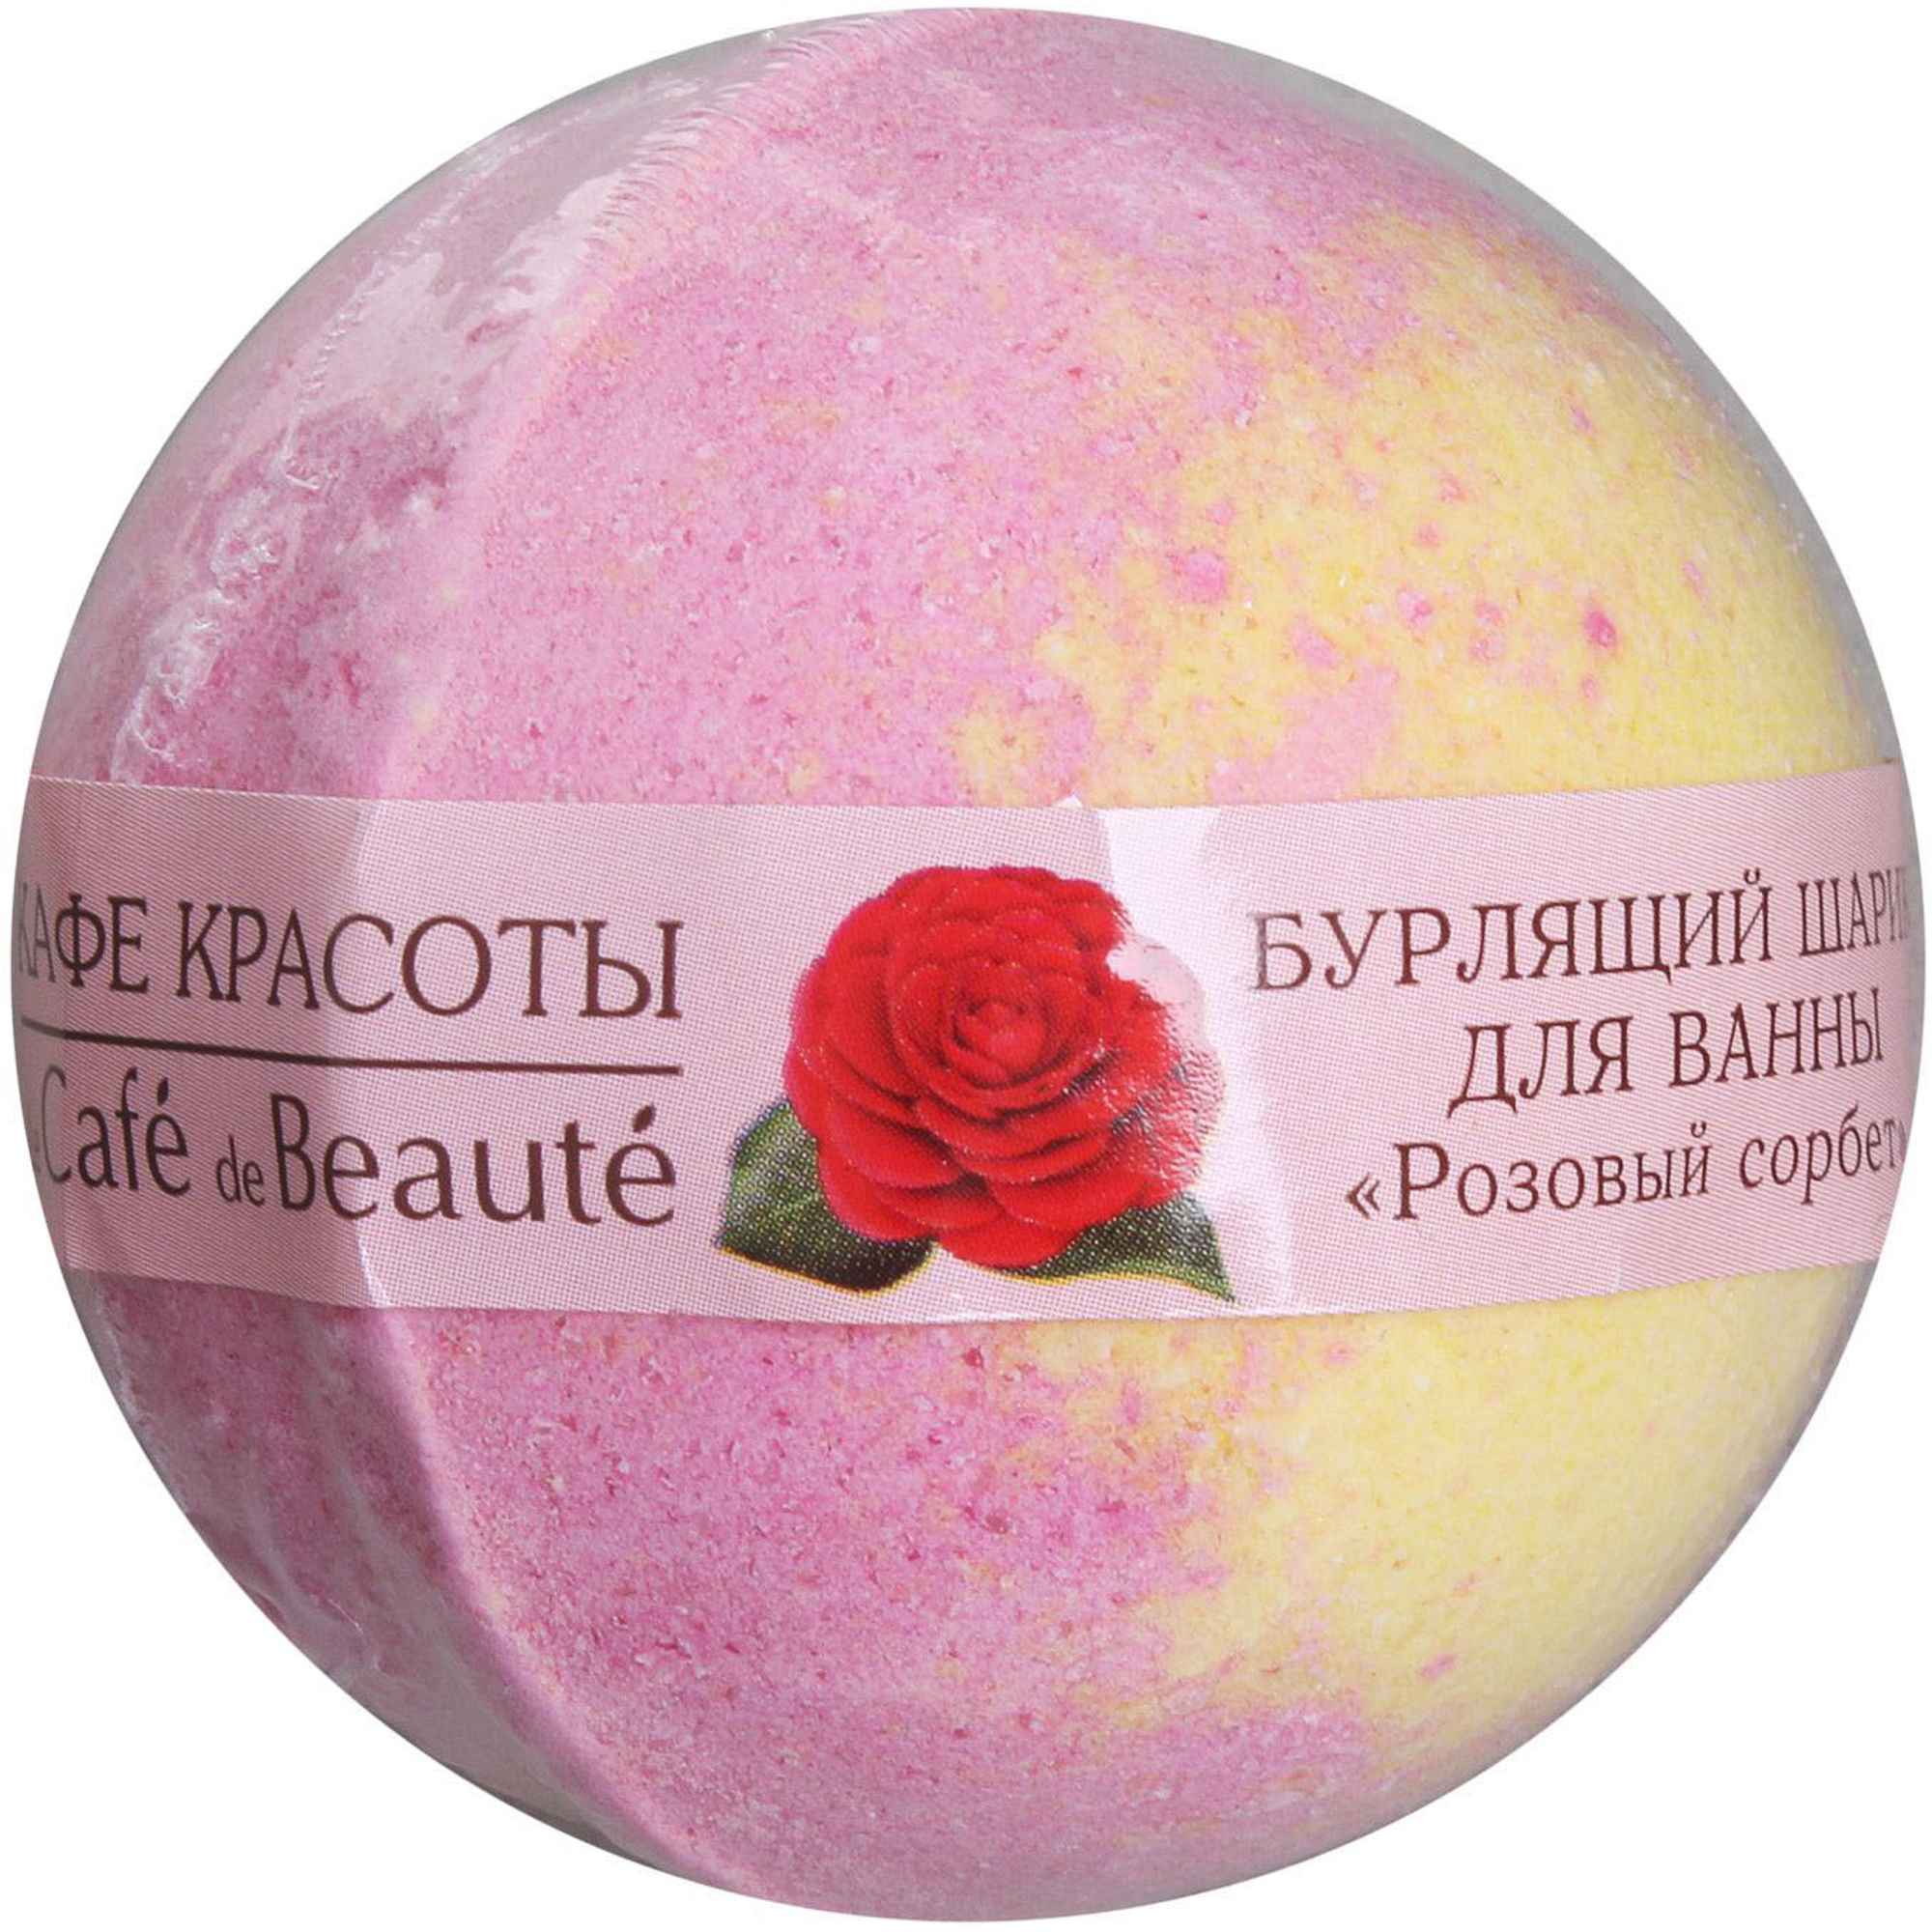 Шар для ванны Кафе Красоты Розовый сорбет 120 г шар для ванны кафе красоты клубничный сорбет 120 г